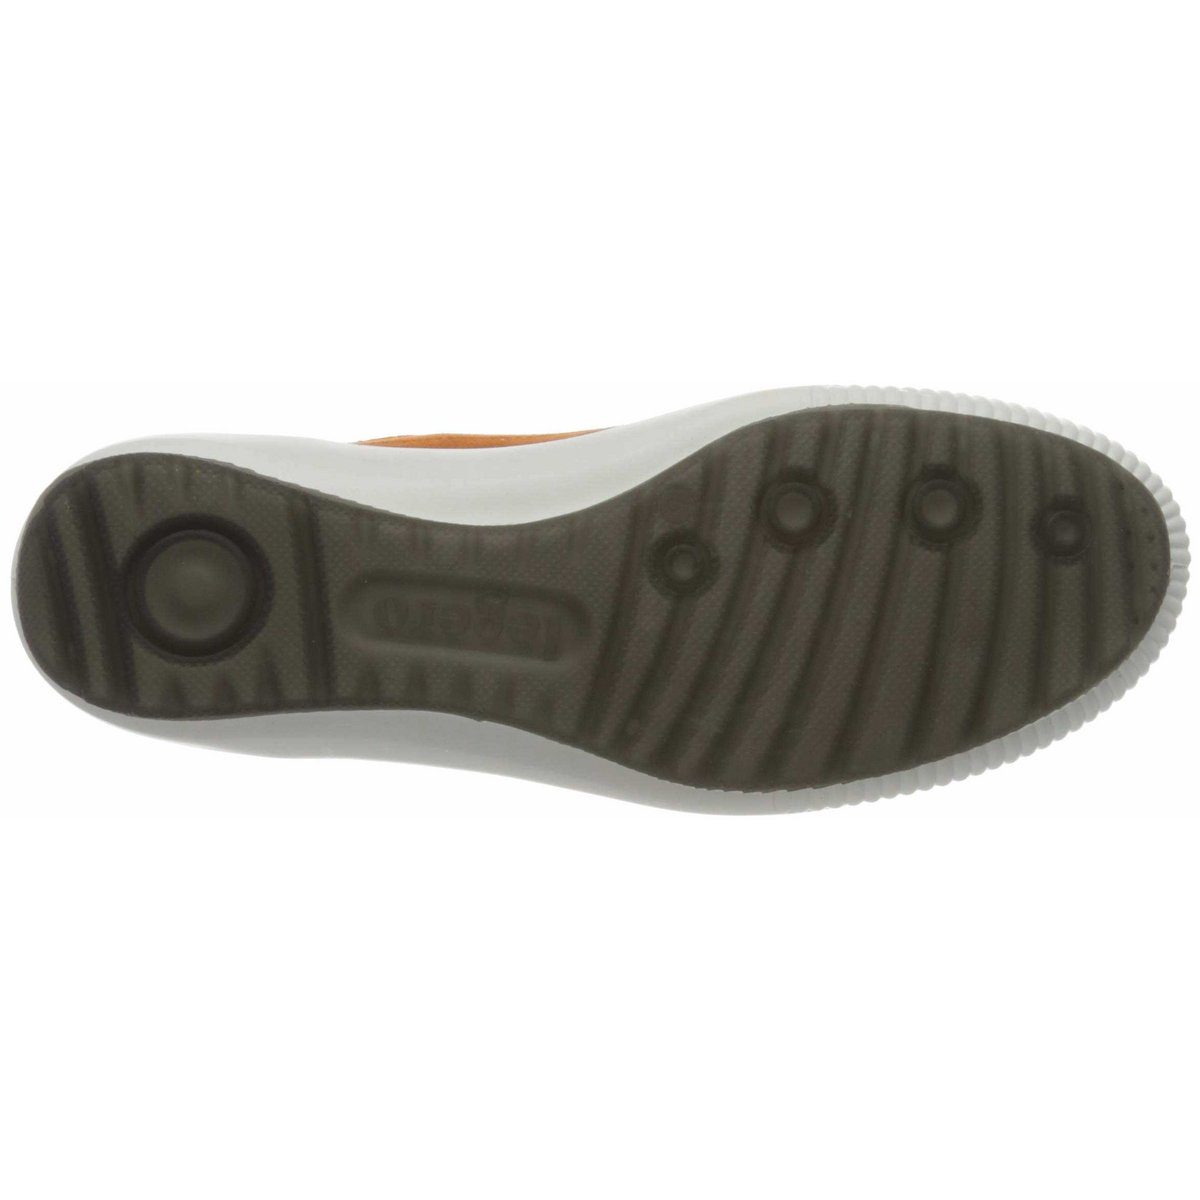 (1-tlg) Sneaker Legero orange